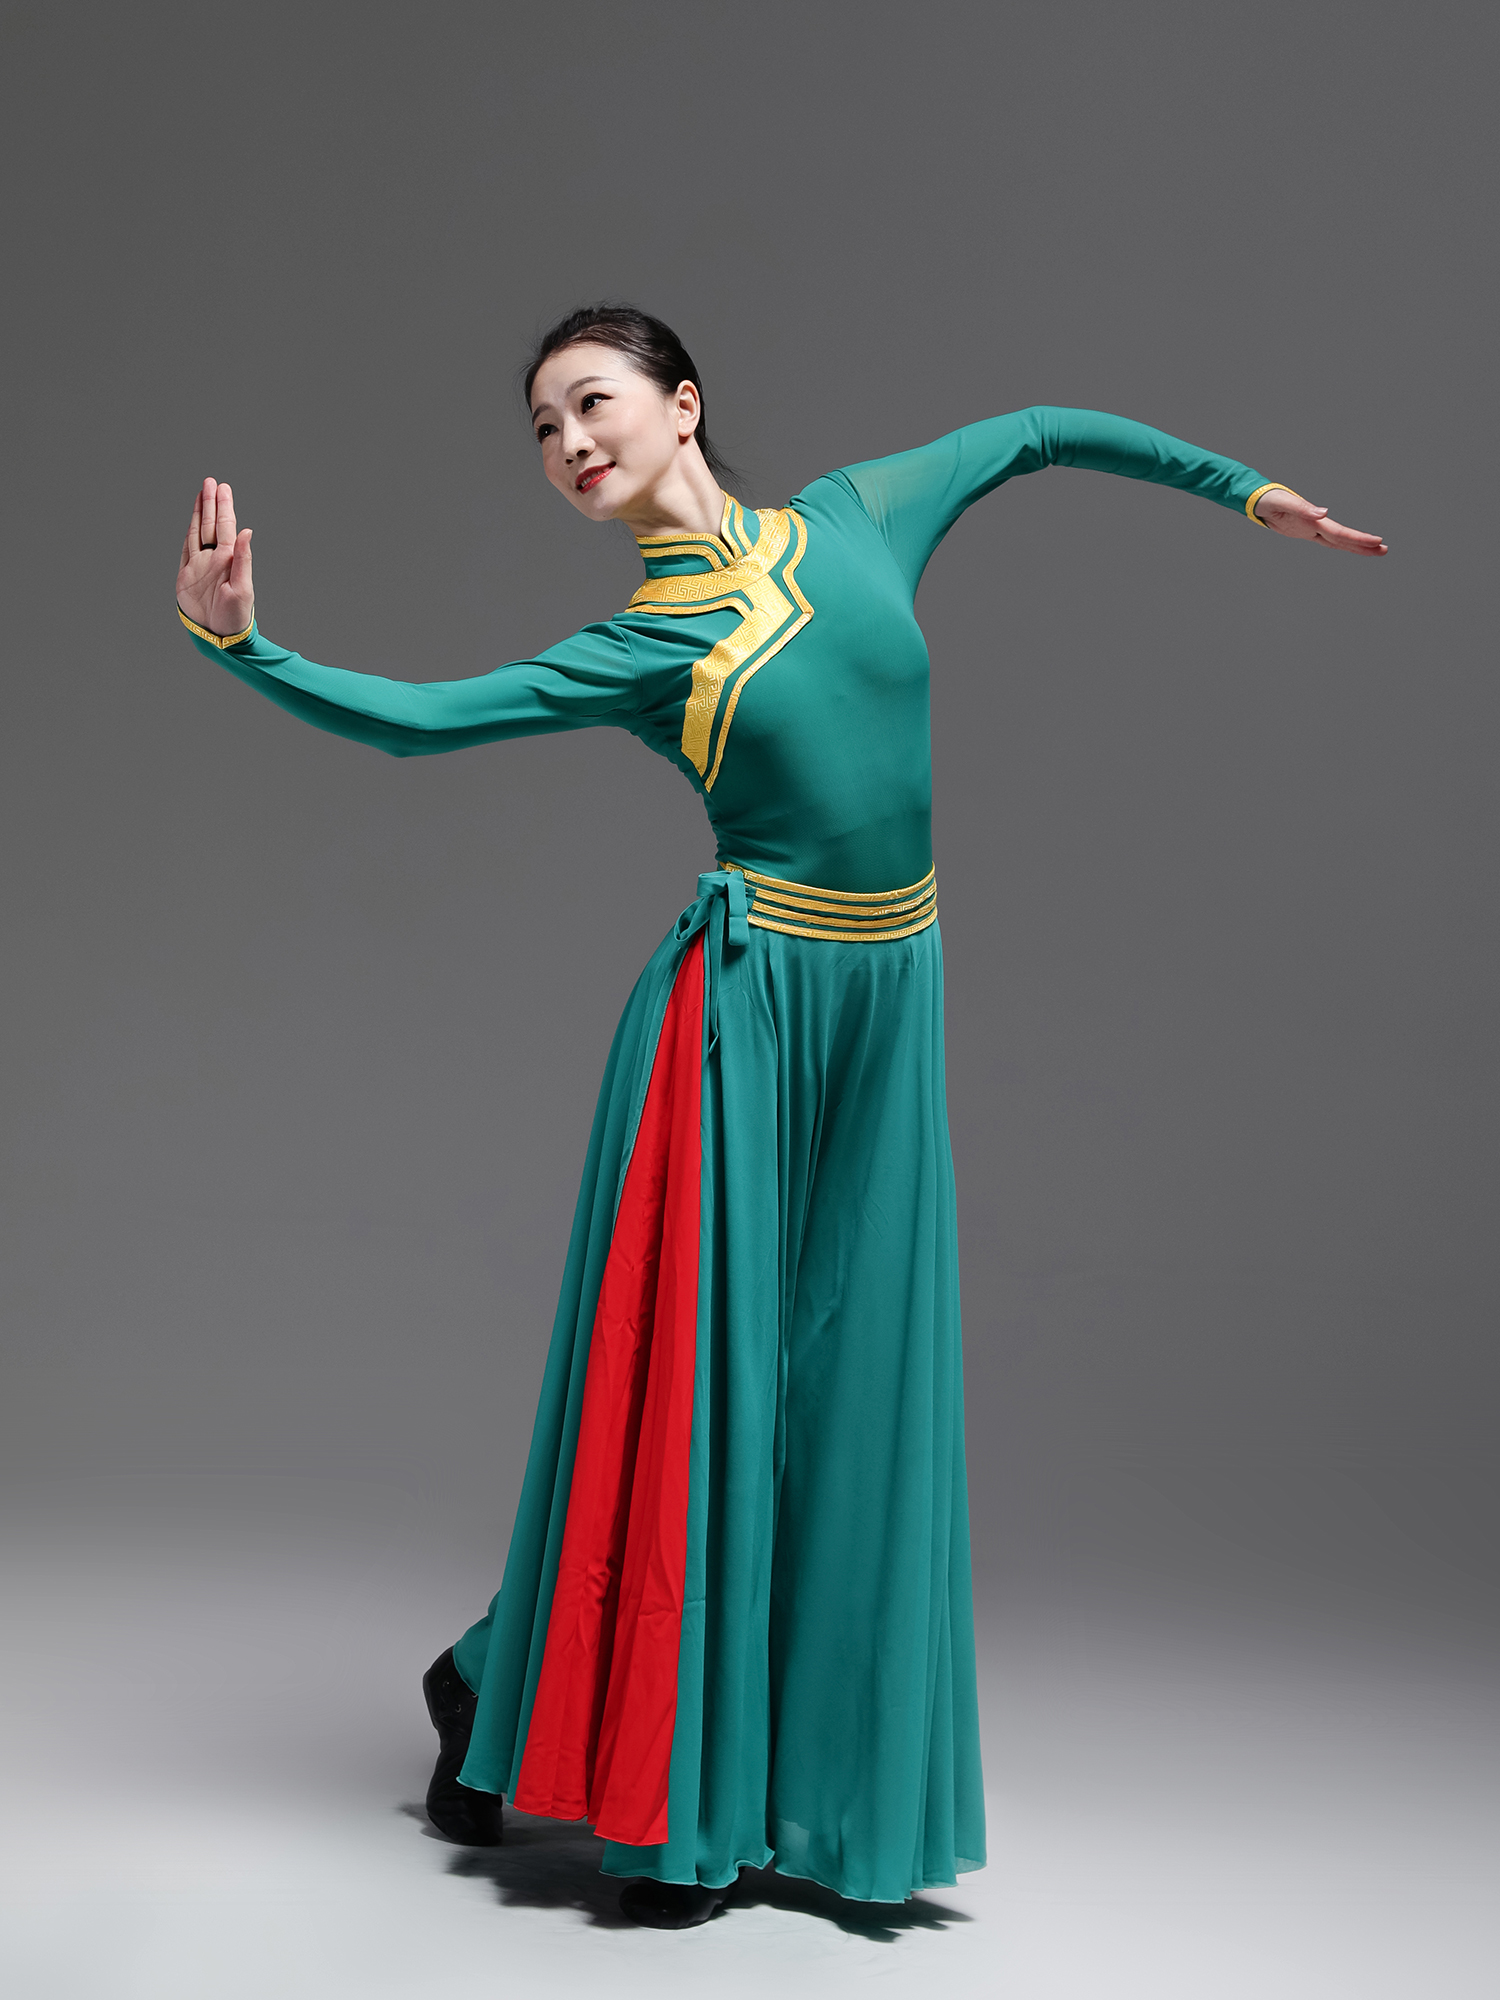 蒙古族舞蹈妆容怎么画图片